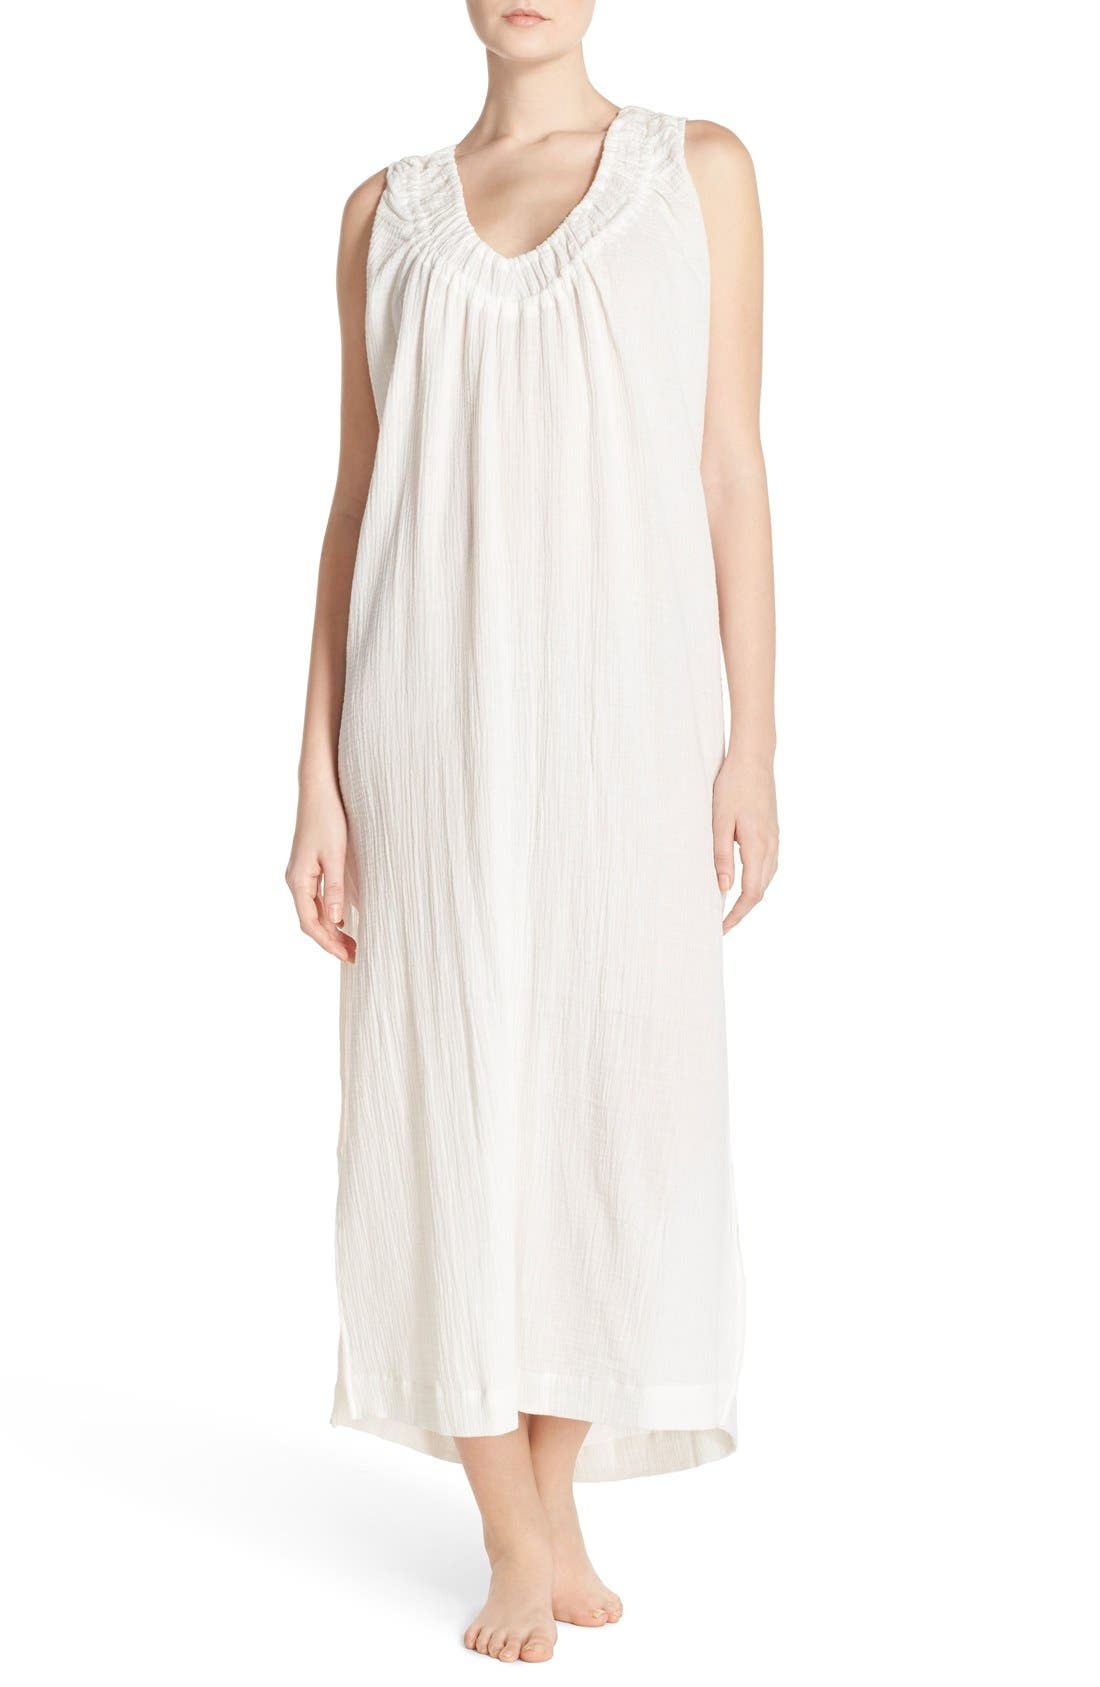 white cotton gauze nightgown